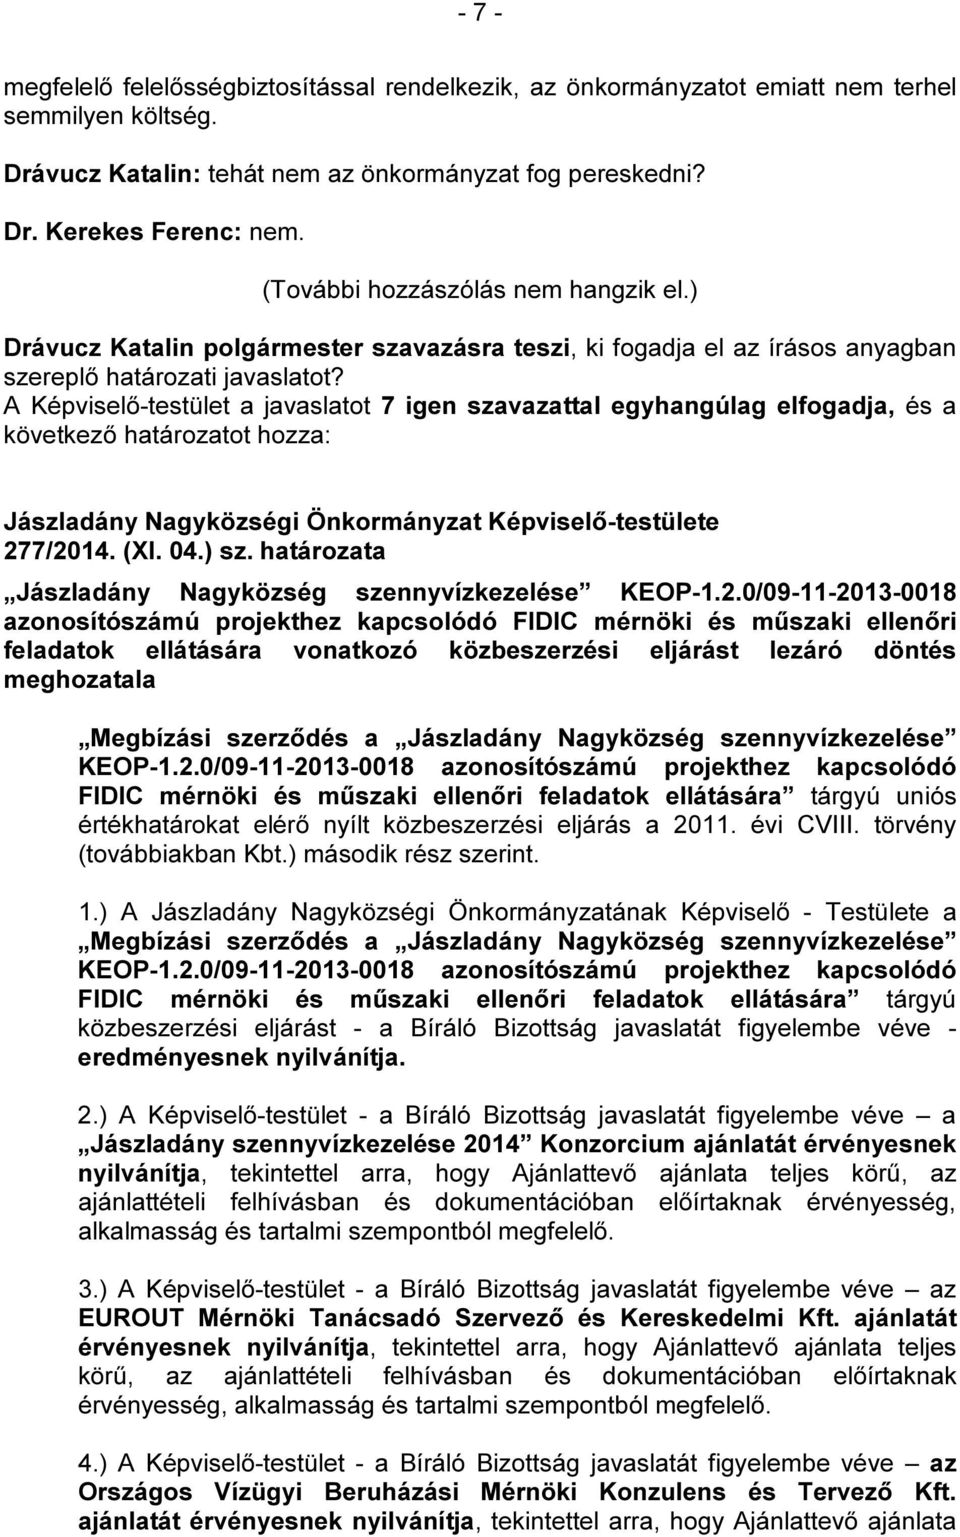 határozata Jászladány Nagyközség szennyvízkezelése KEOP-1.2.